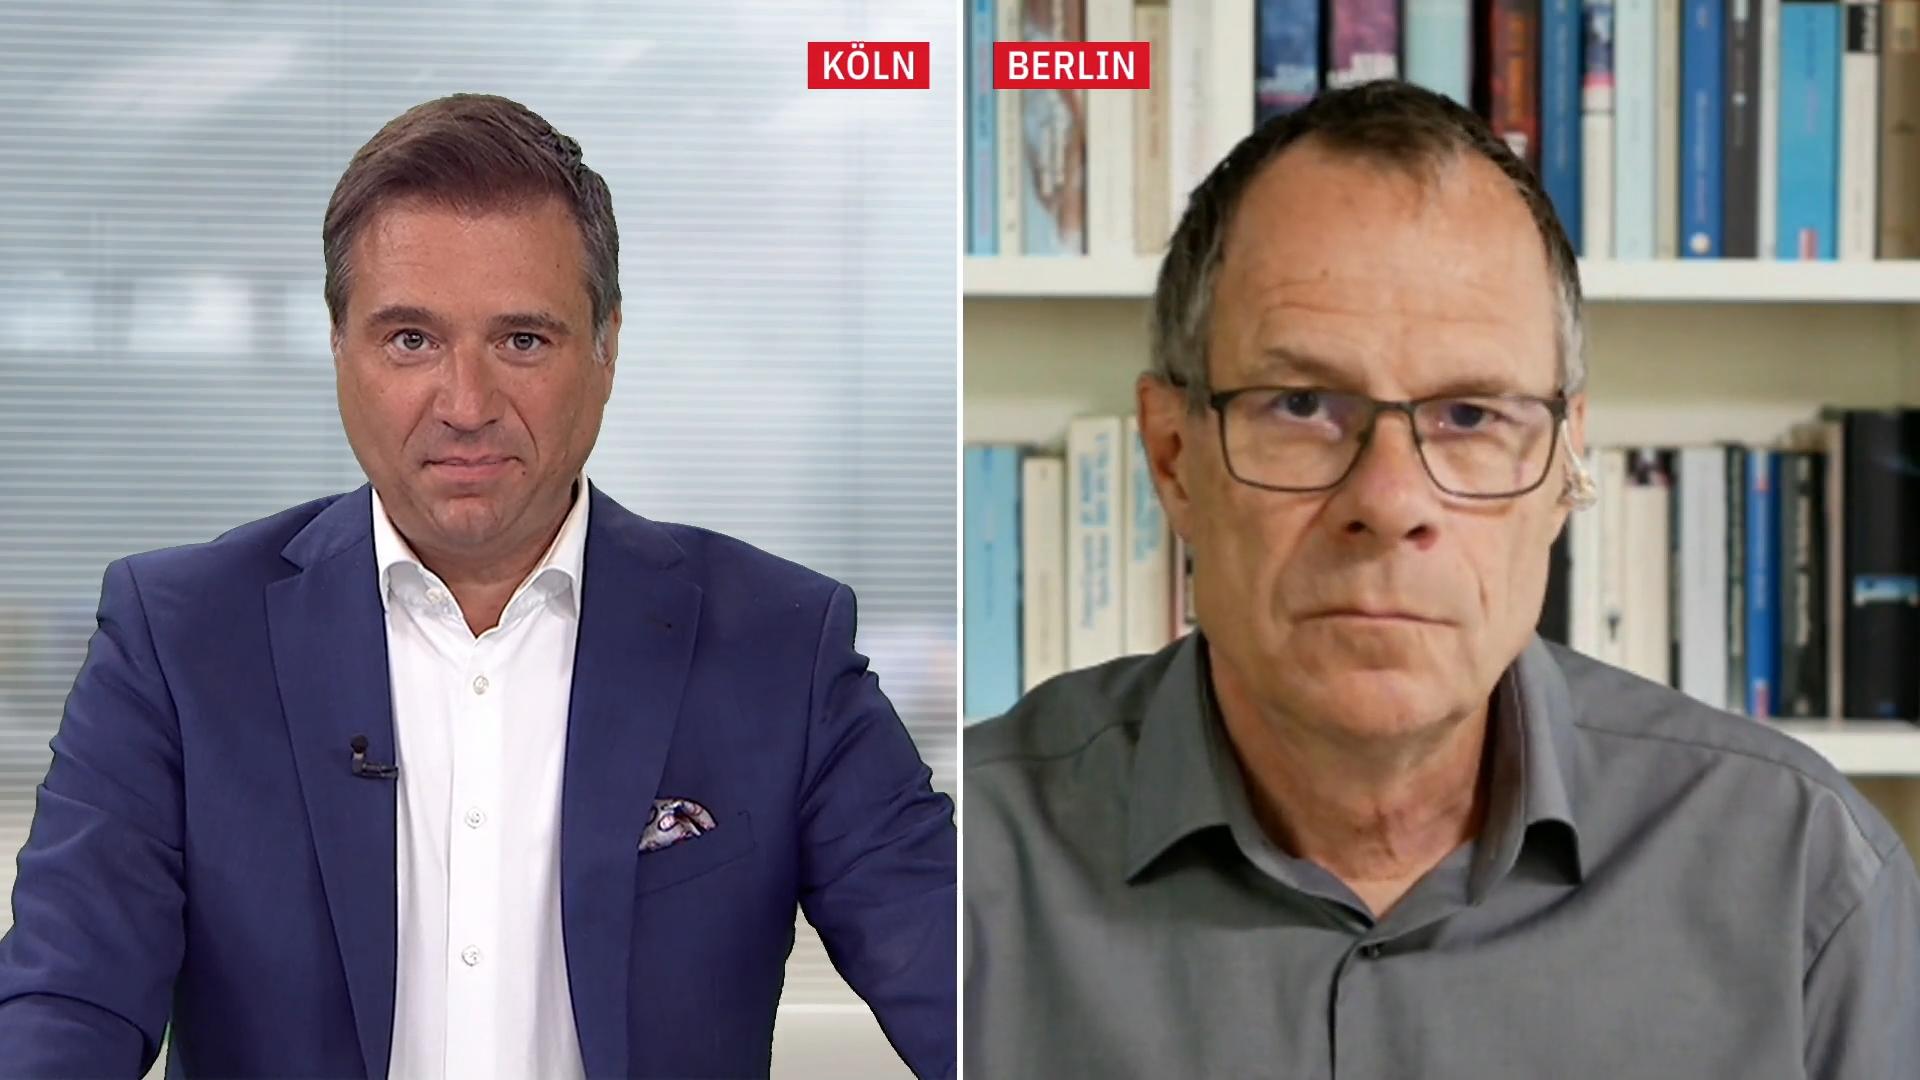 Thomas Wiegold zu Haubitzen: "Das ist schon eine Hausnummer" Militärexperte im Gespräch